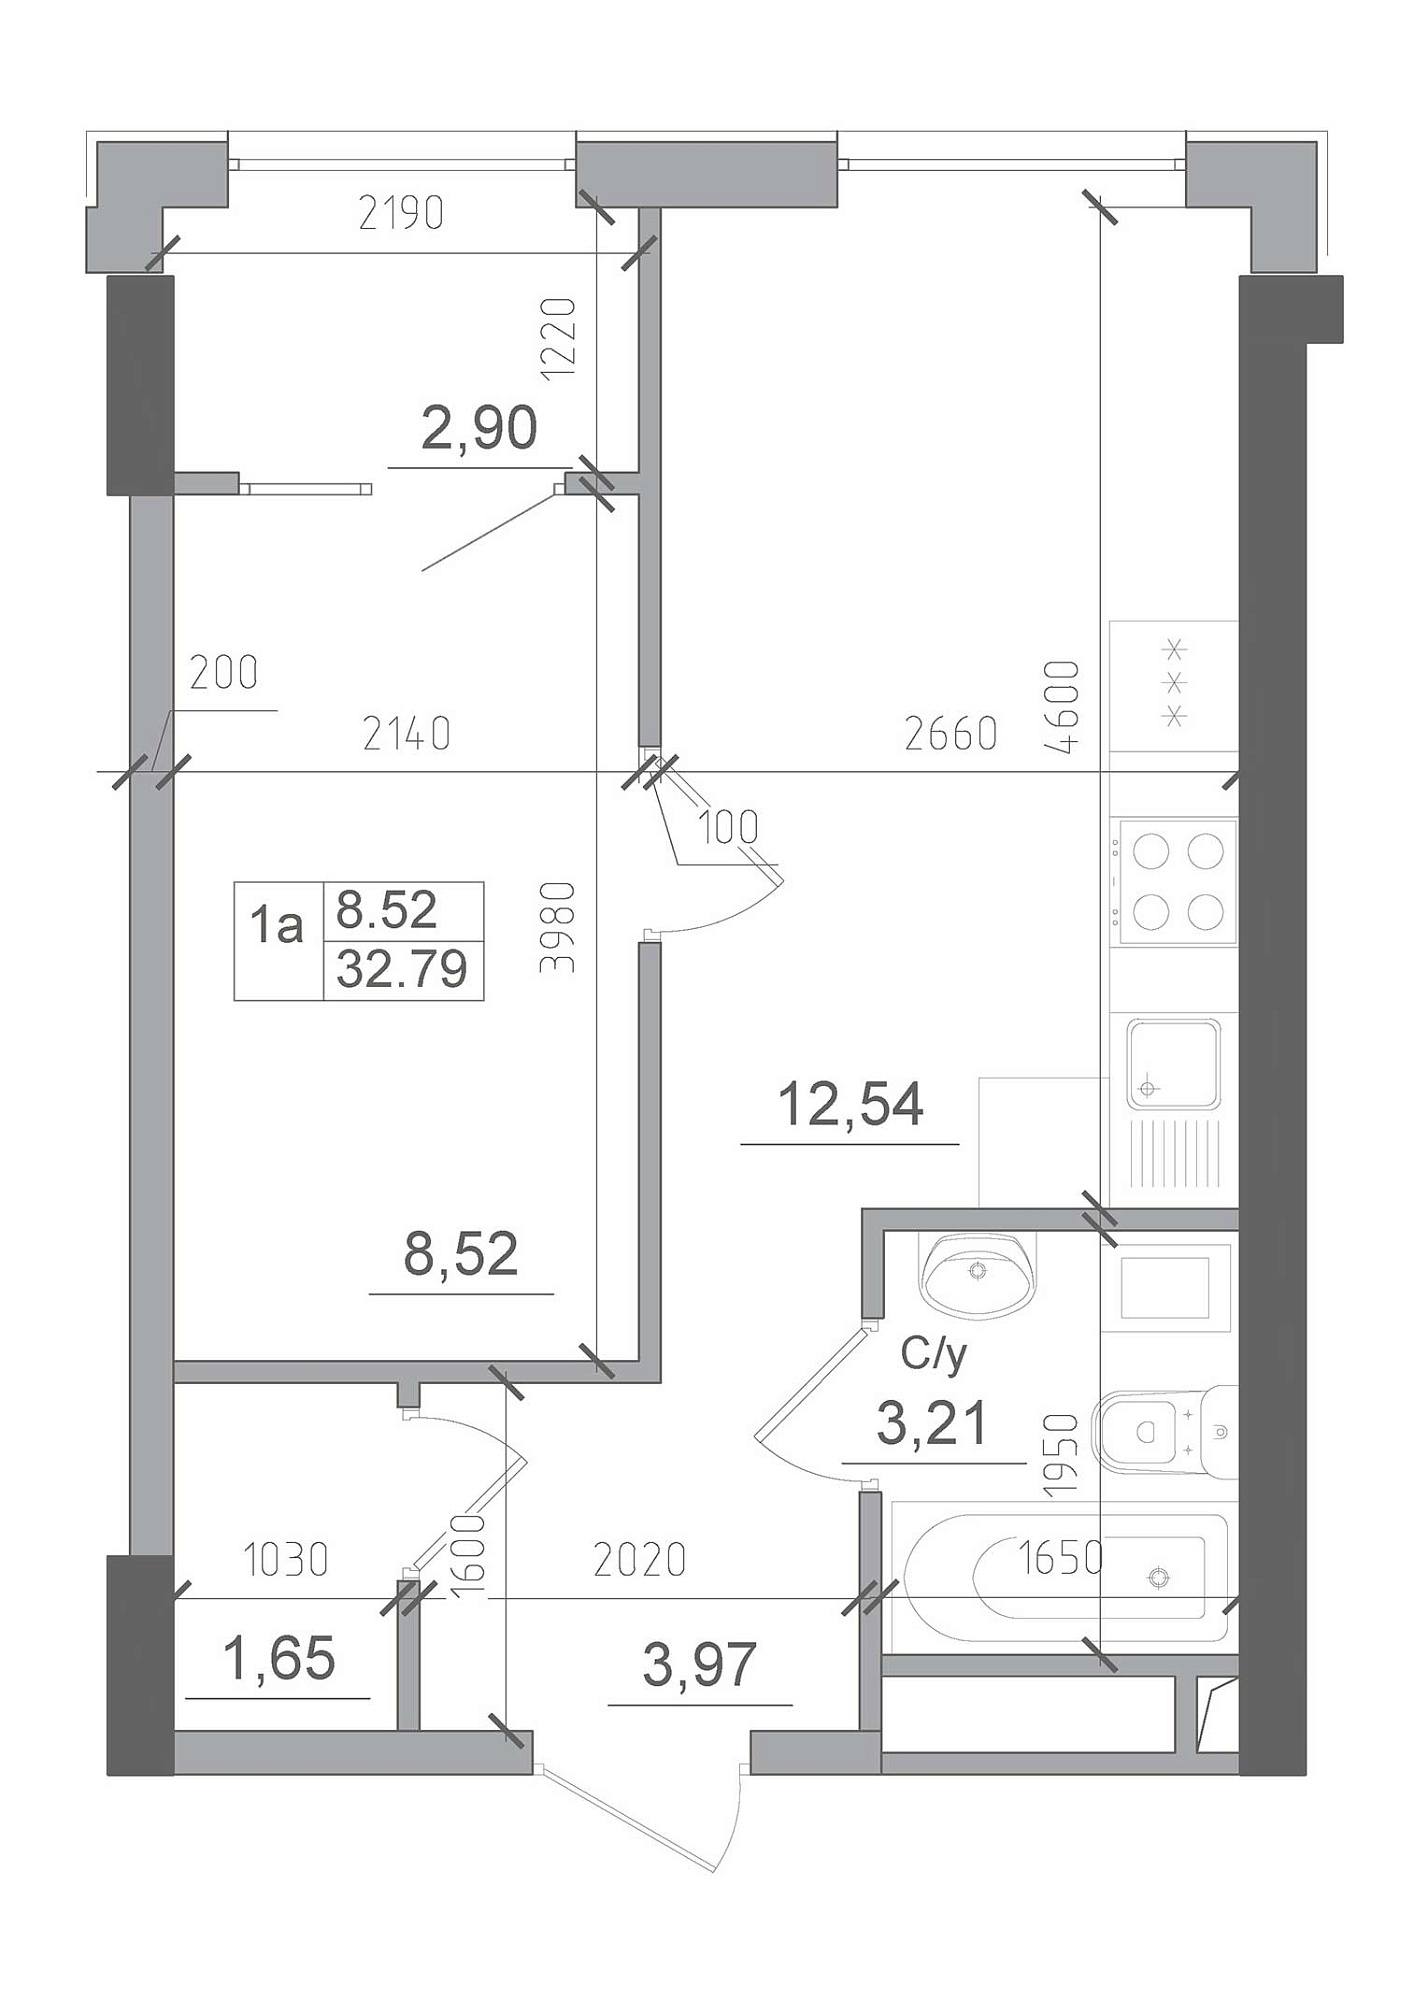 Планування 1-к квартира площею 32.79м2, AB-22-12/00001.